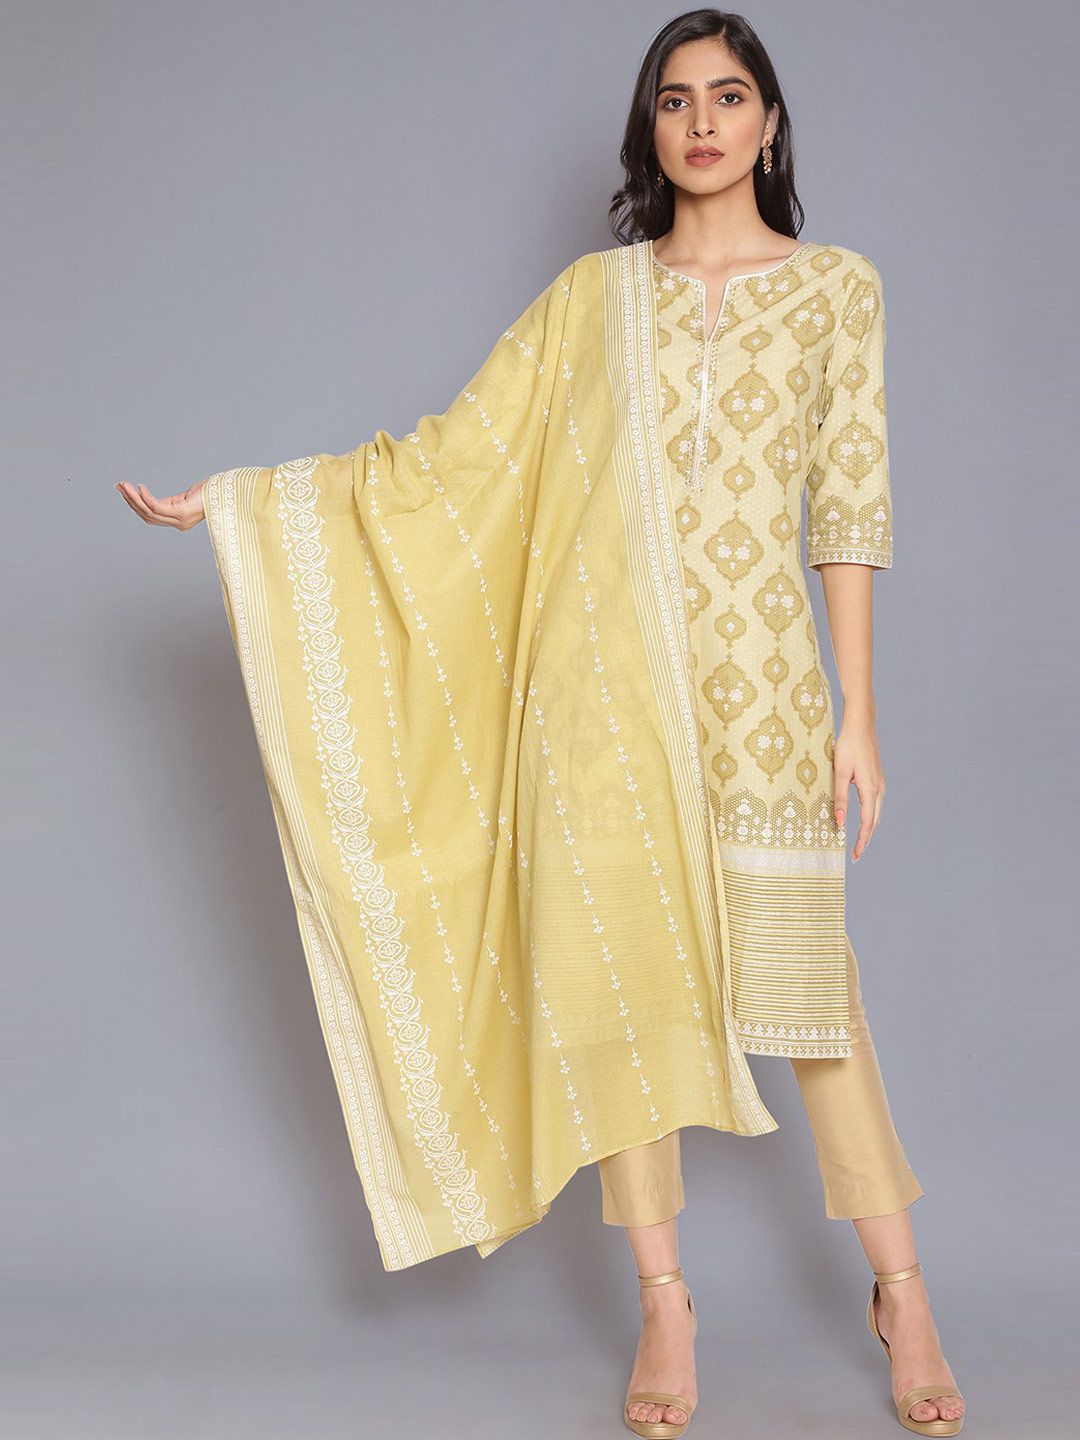 W Women Yellow & White Woven Design Pure Cotton Dupatta with Zari Price in India